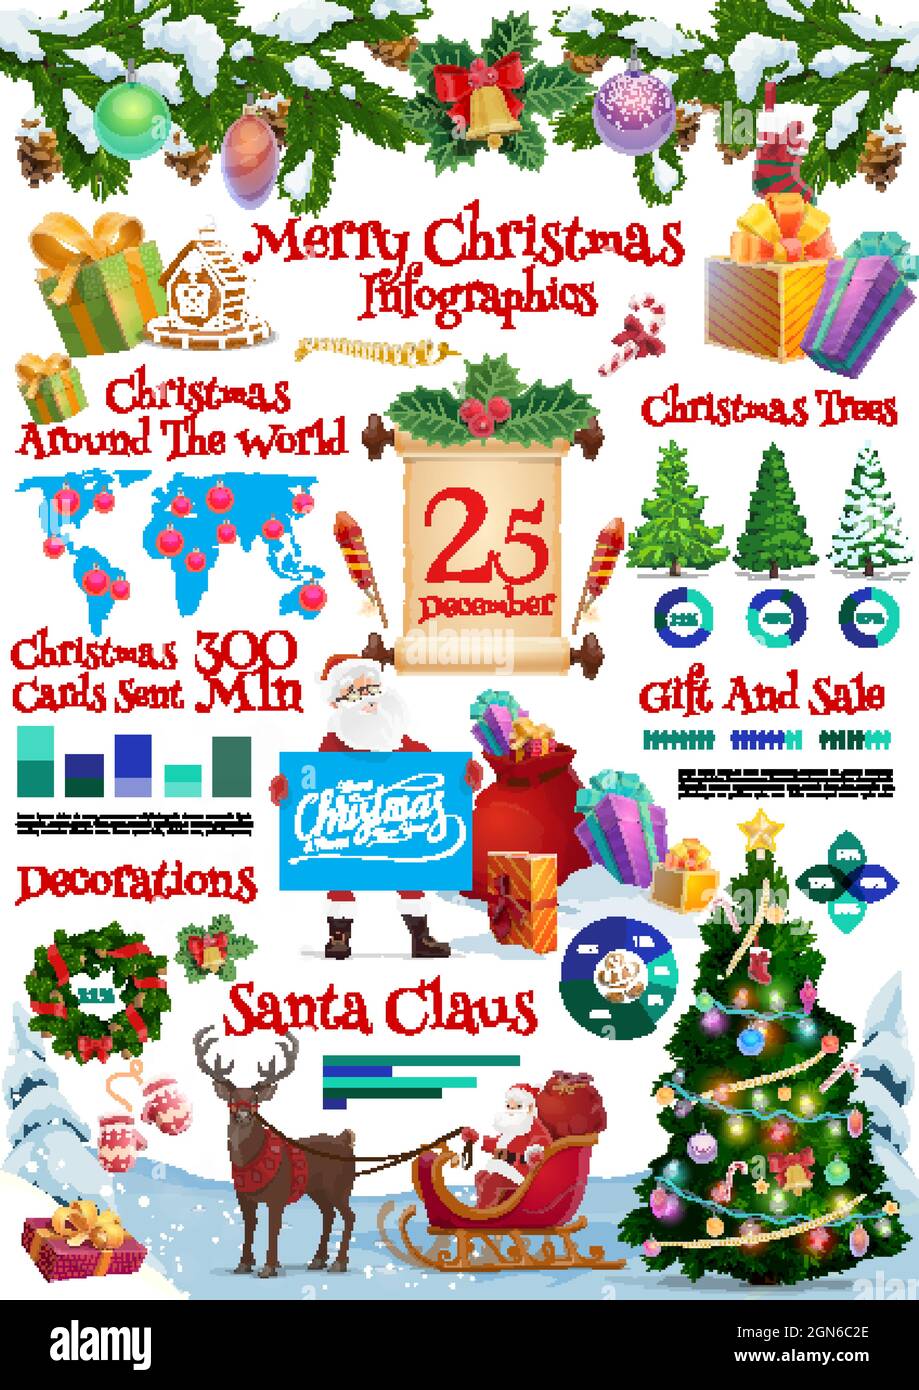 Feliz Navidad día de fiesta infografía plantilla con diagramas, Santa  carácter en trineo lleno de regalos, ornamentos y decoraciones de árboles  de Navidad, regalos envueltos, dulces y mapa del mundo de vectores